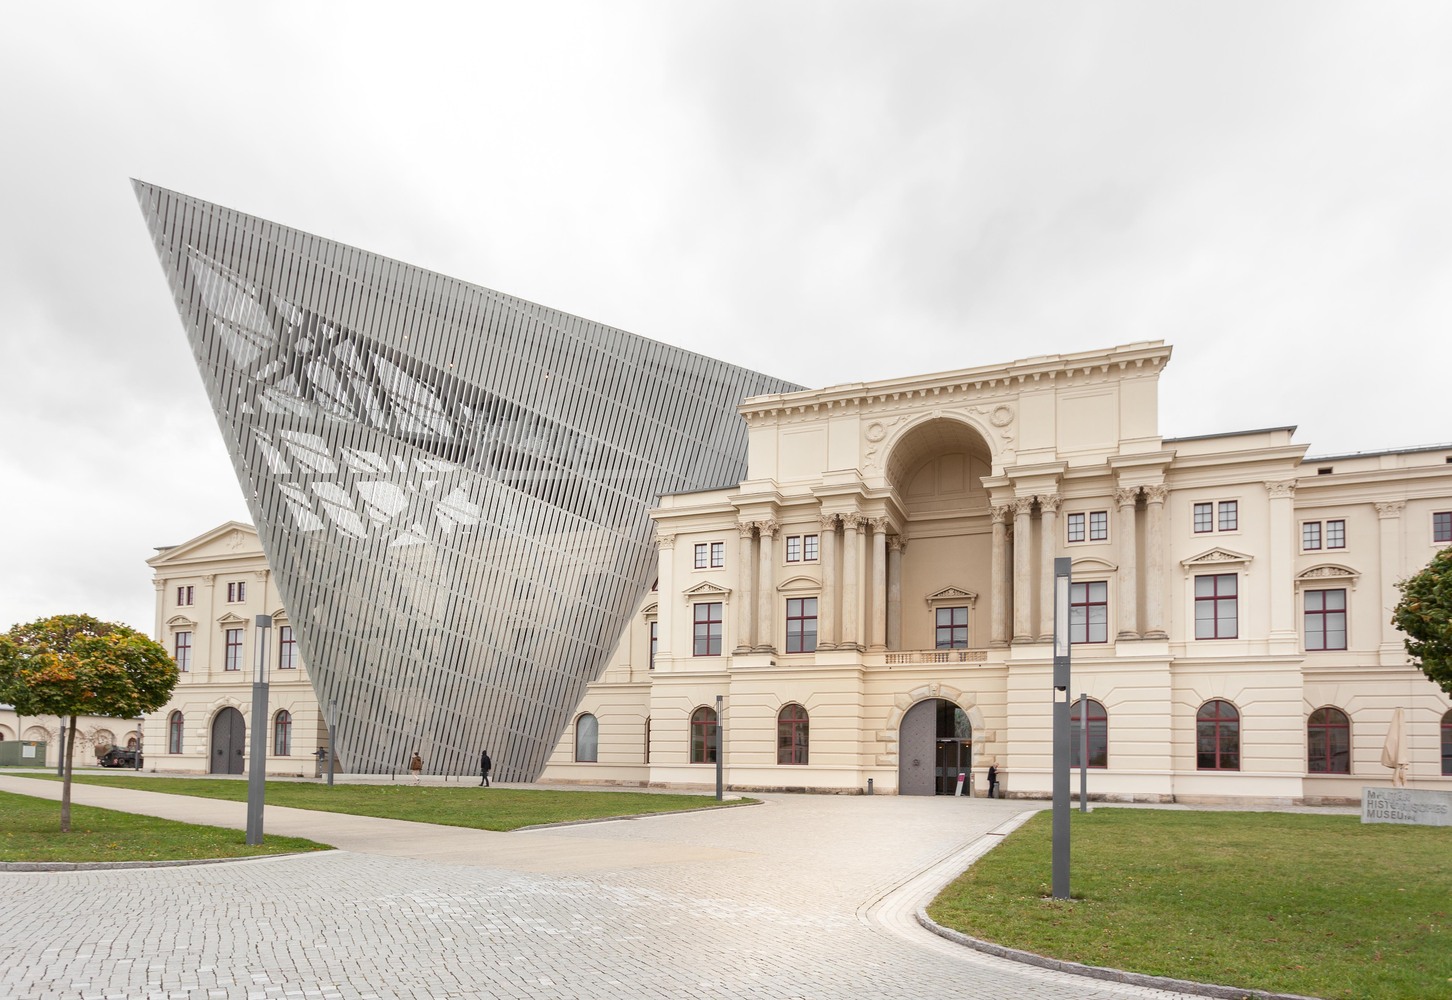 里伯斯金“德累斯顿军事历史博物馆”：插入巨大混凝土结构，撕裂历史